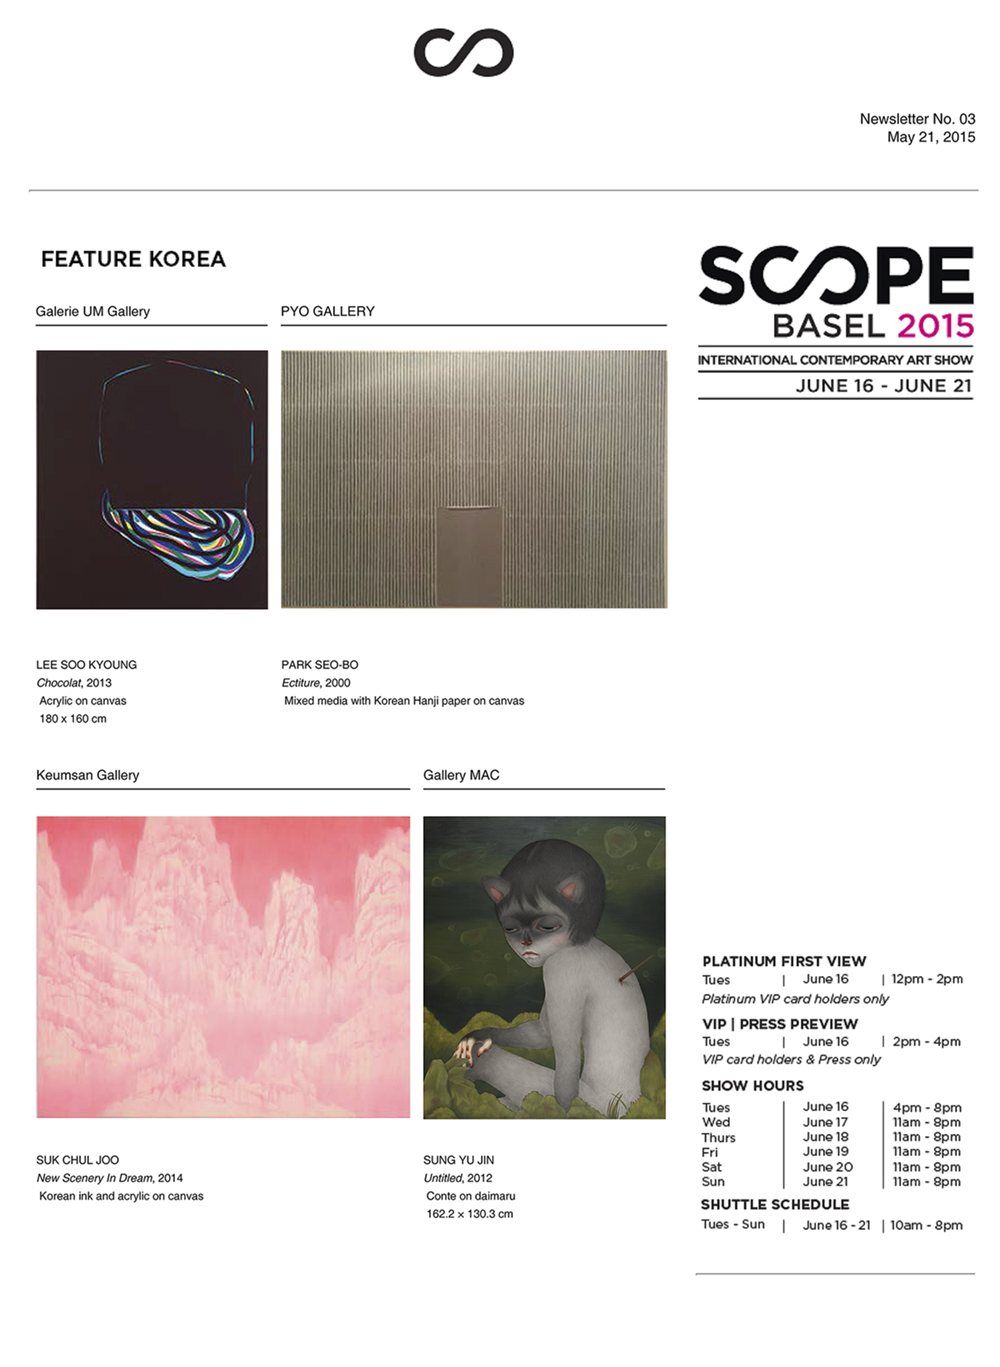 SCOPE Basel 2015 _ Newsletter No. 02.jpg